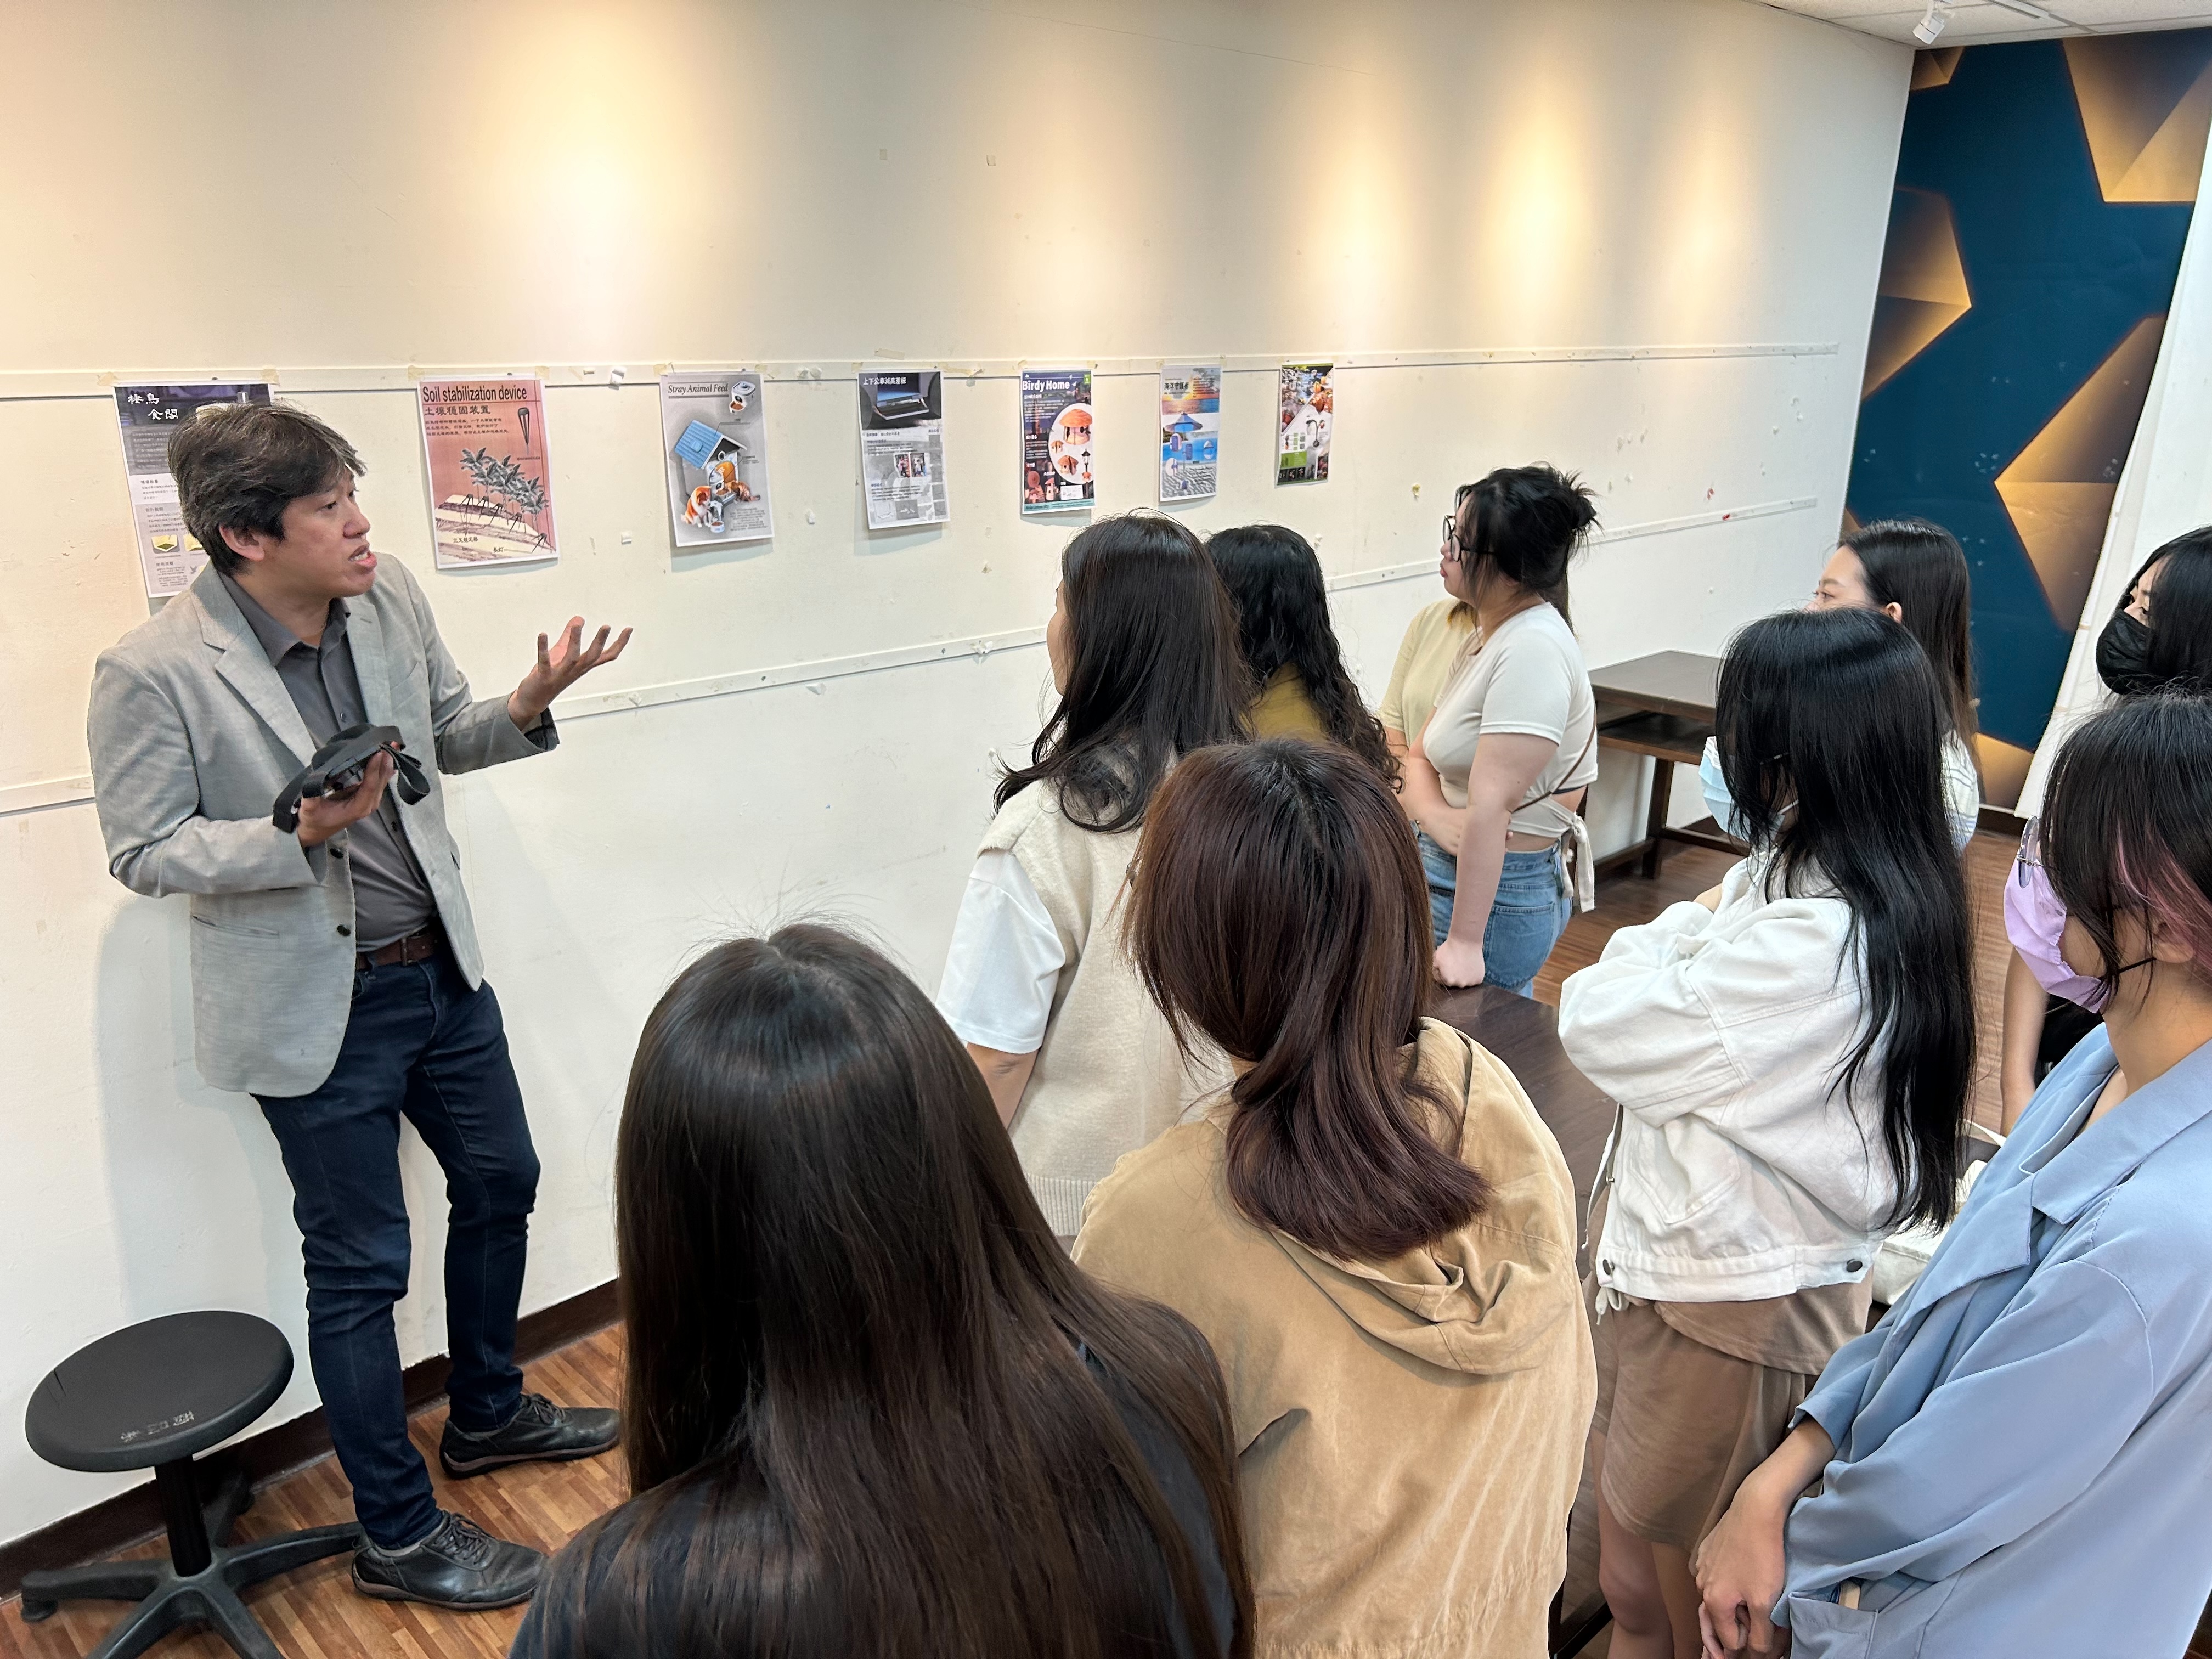 亞大思維創新戰鬥營---國際設計菁英團，明志科大李鍇朮教授與同學實體展示之海報作品討論。